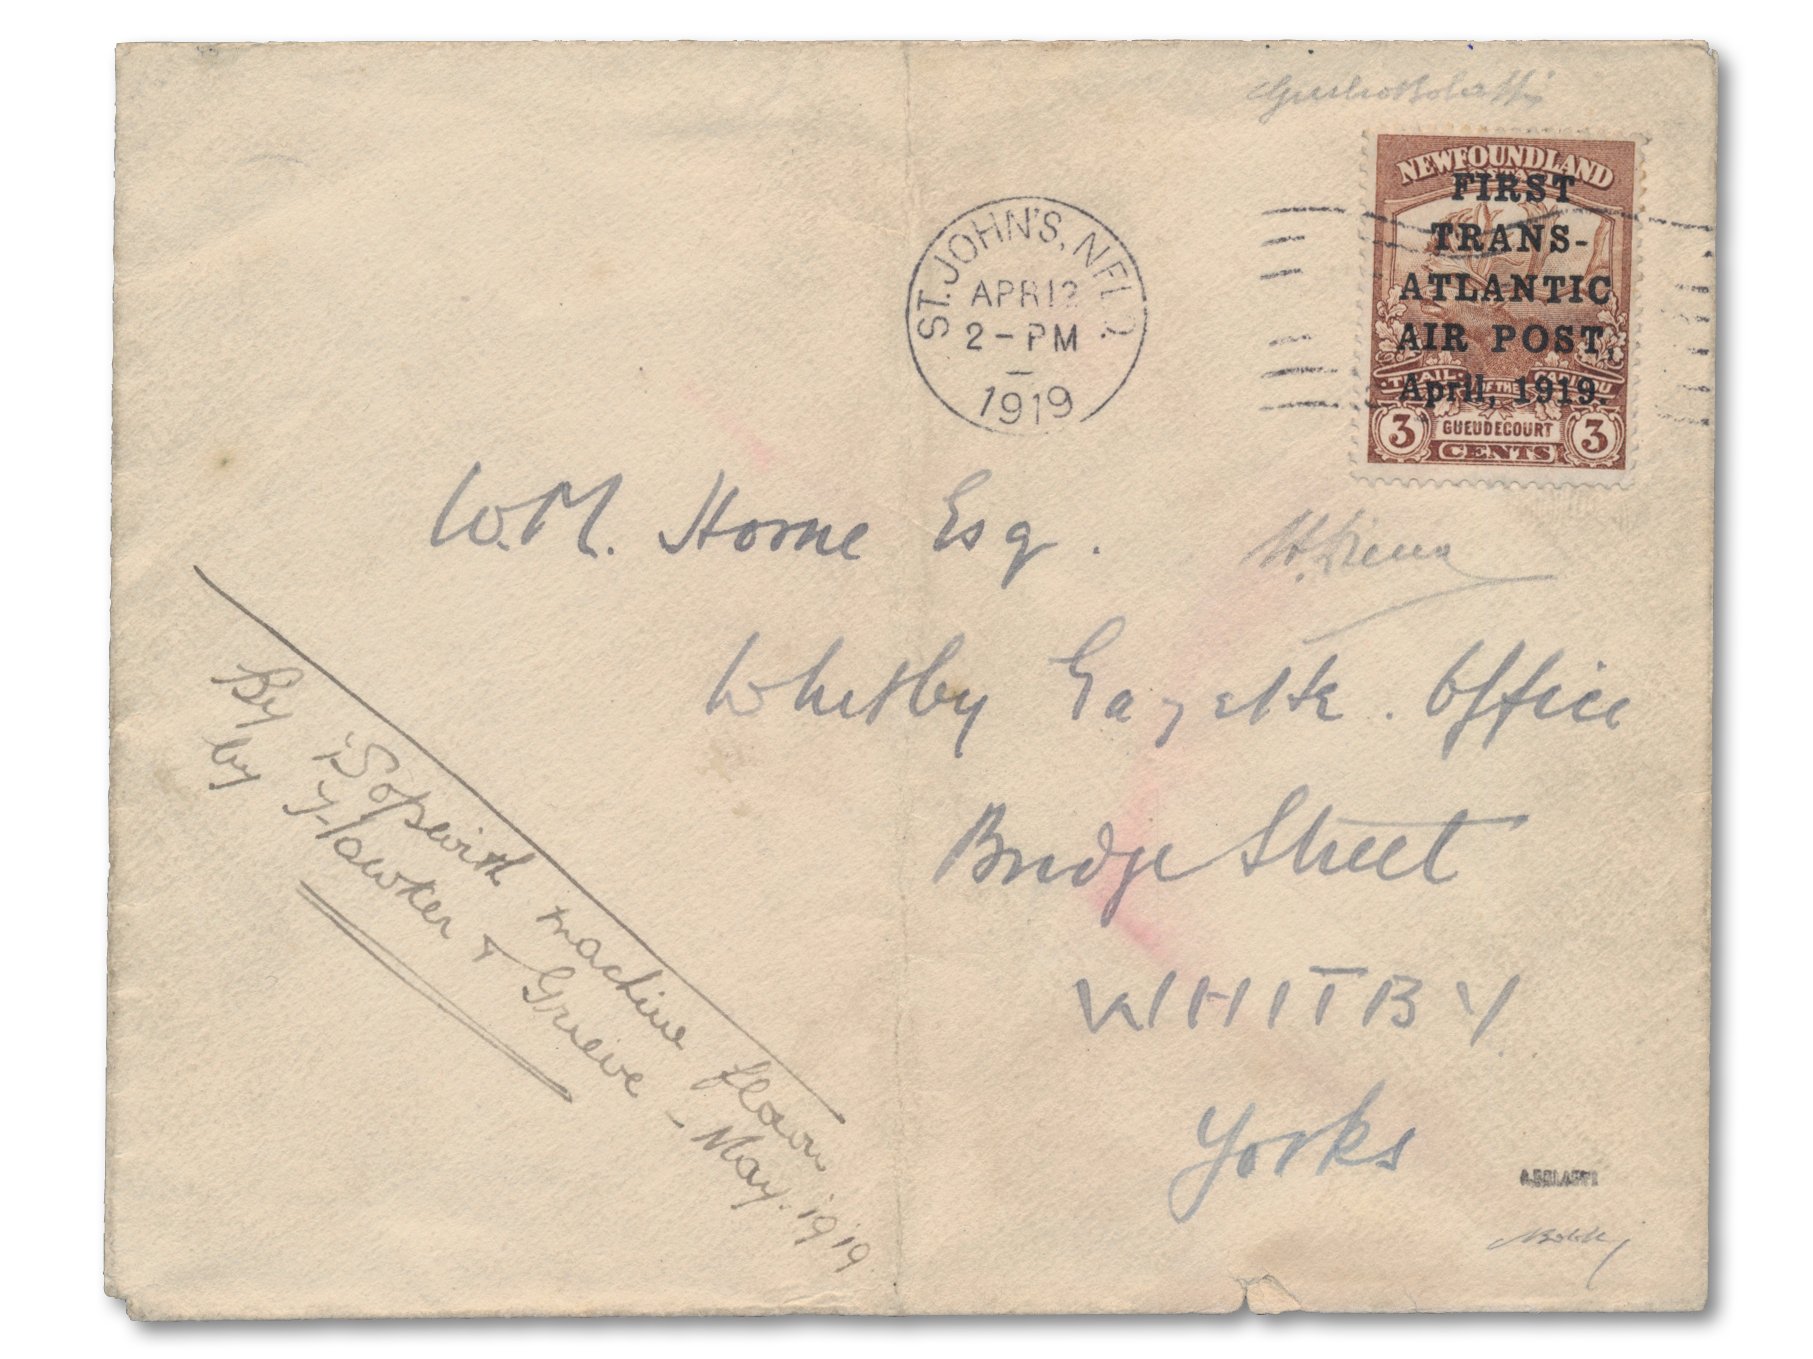 1919 Hawker Luftpostmarke 3 cent braun verwendet auf dem Brief Erster Transatlantik-Luftpostversuch